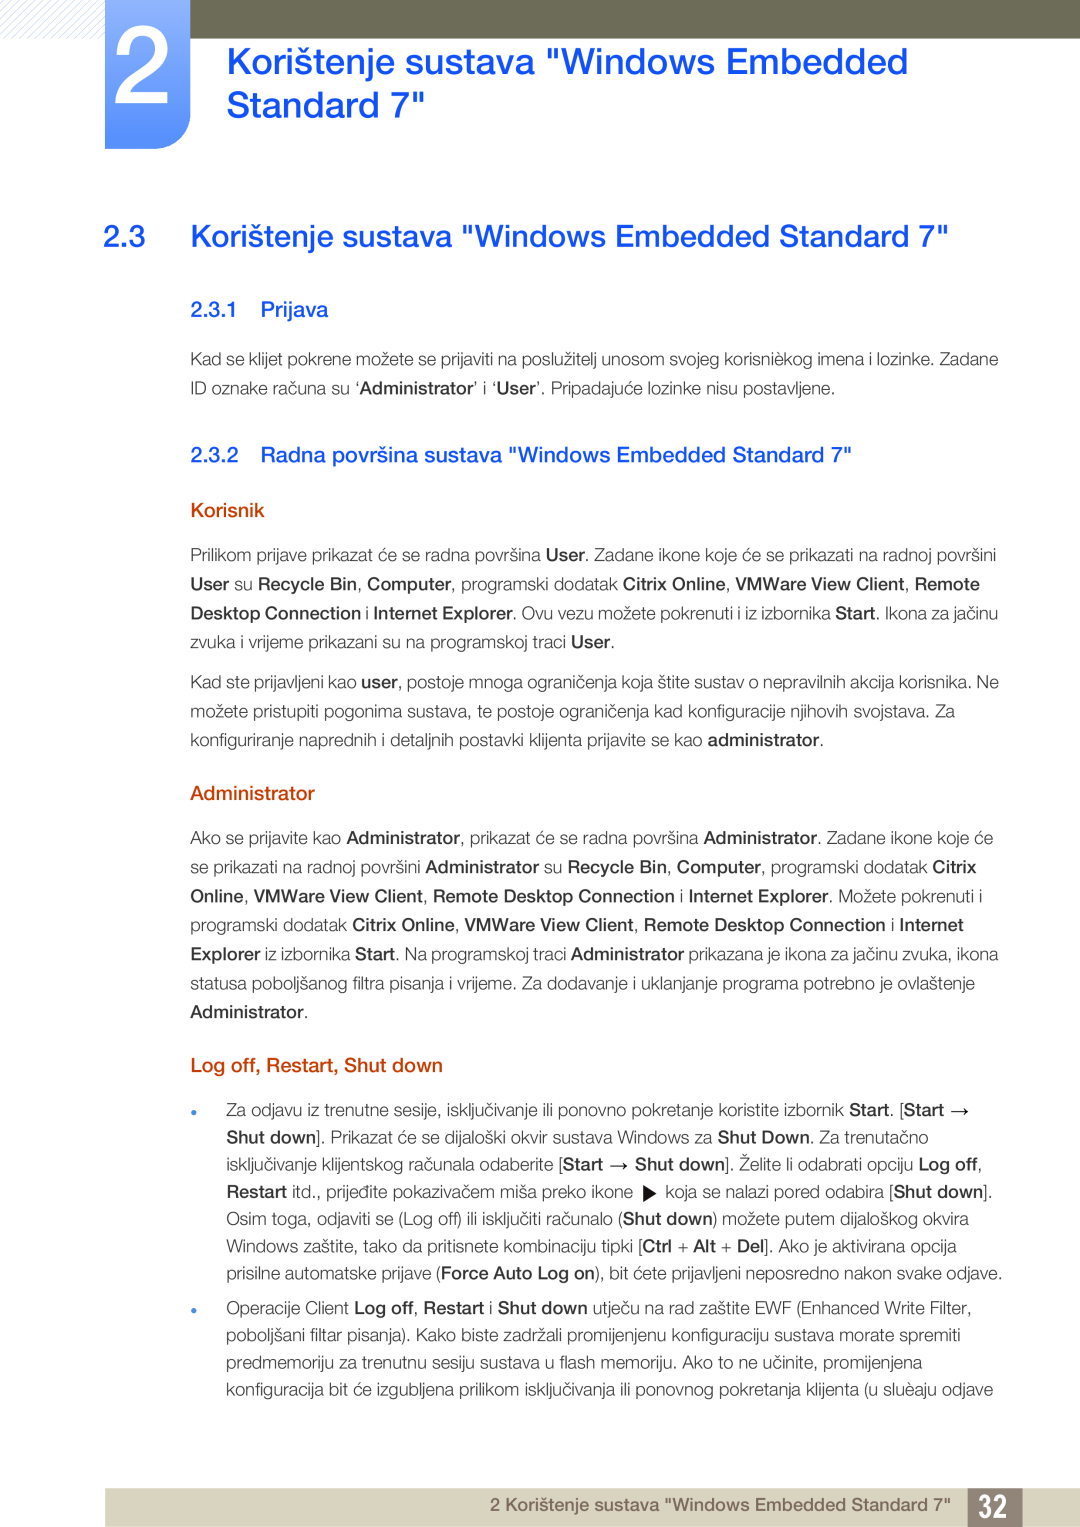 Samsung LF22TSWTBDN/EN, LF24TSWTBDN/EN manual Korištenje sustava Windows Embedded Standard, Prijava, Korisnik, Administrator 